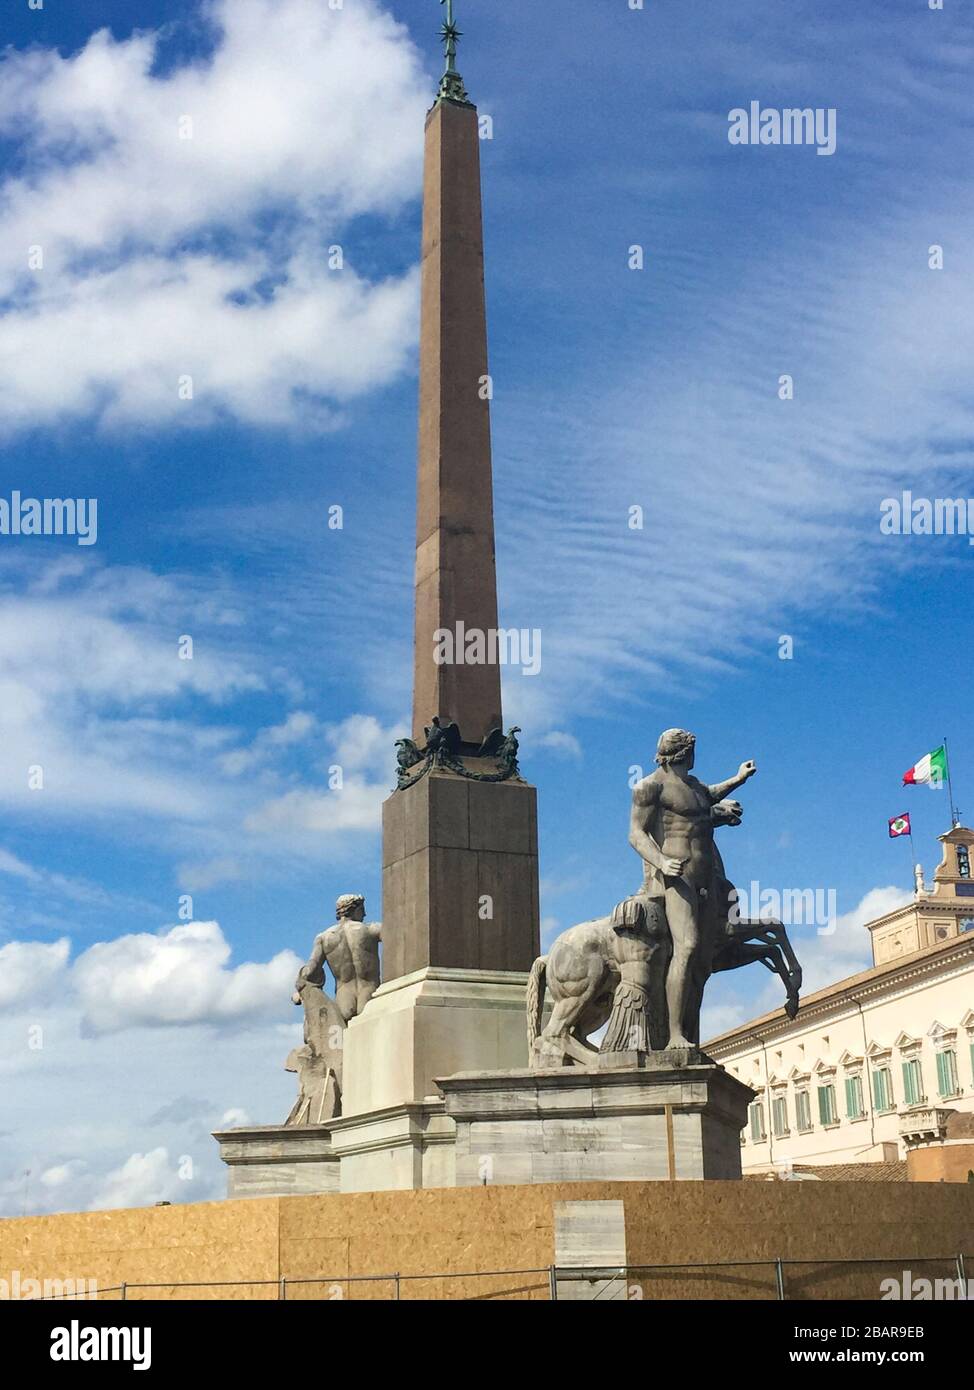 Der Brunnen von Dioscuri befindet sich auf dem Quirinalplatz in Rom, wo man auch den gleichnamigen Palast, Amtssitz des Pres, sehen kann Stockfoto